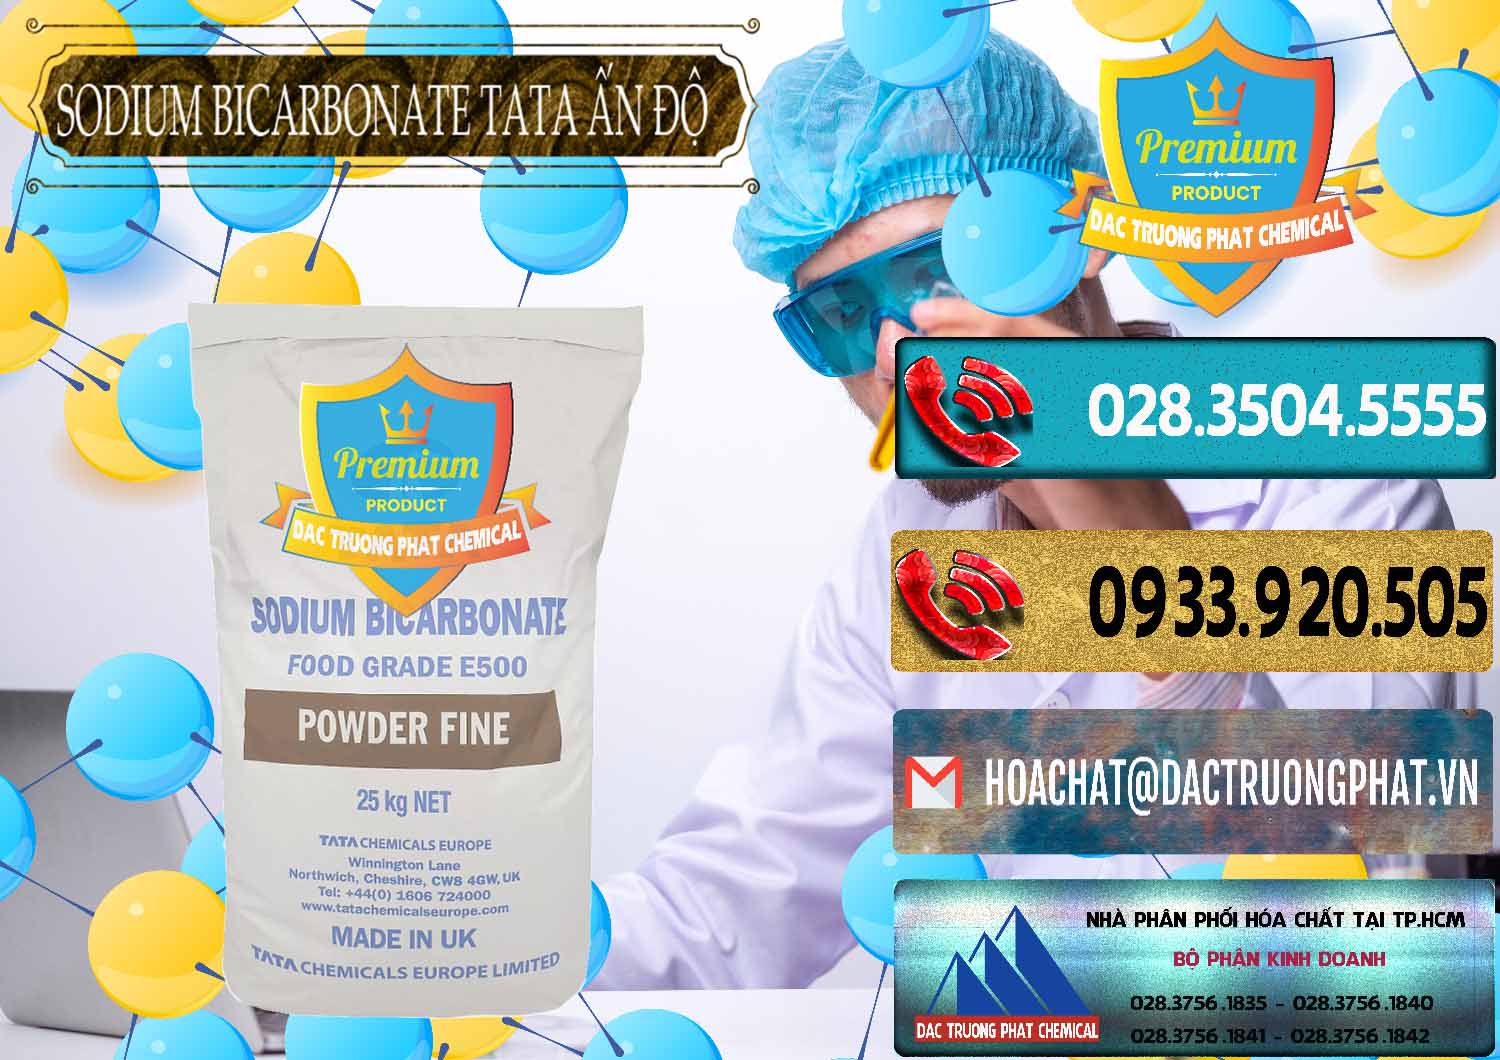 Cty bán & phân phối Sodium Bicarbonate – Bicar NaHCO3 E500 Thực Phẩm Food Grade Tata Ấn Độ India - 0261 - Nơi chuyên bán - phân phối hóa chất tại TP.HCM - hoachatdetnhuom.com